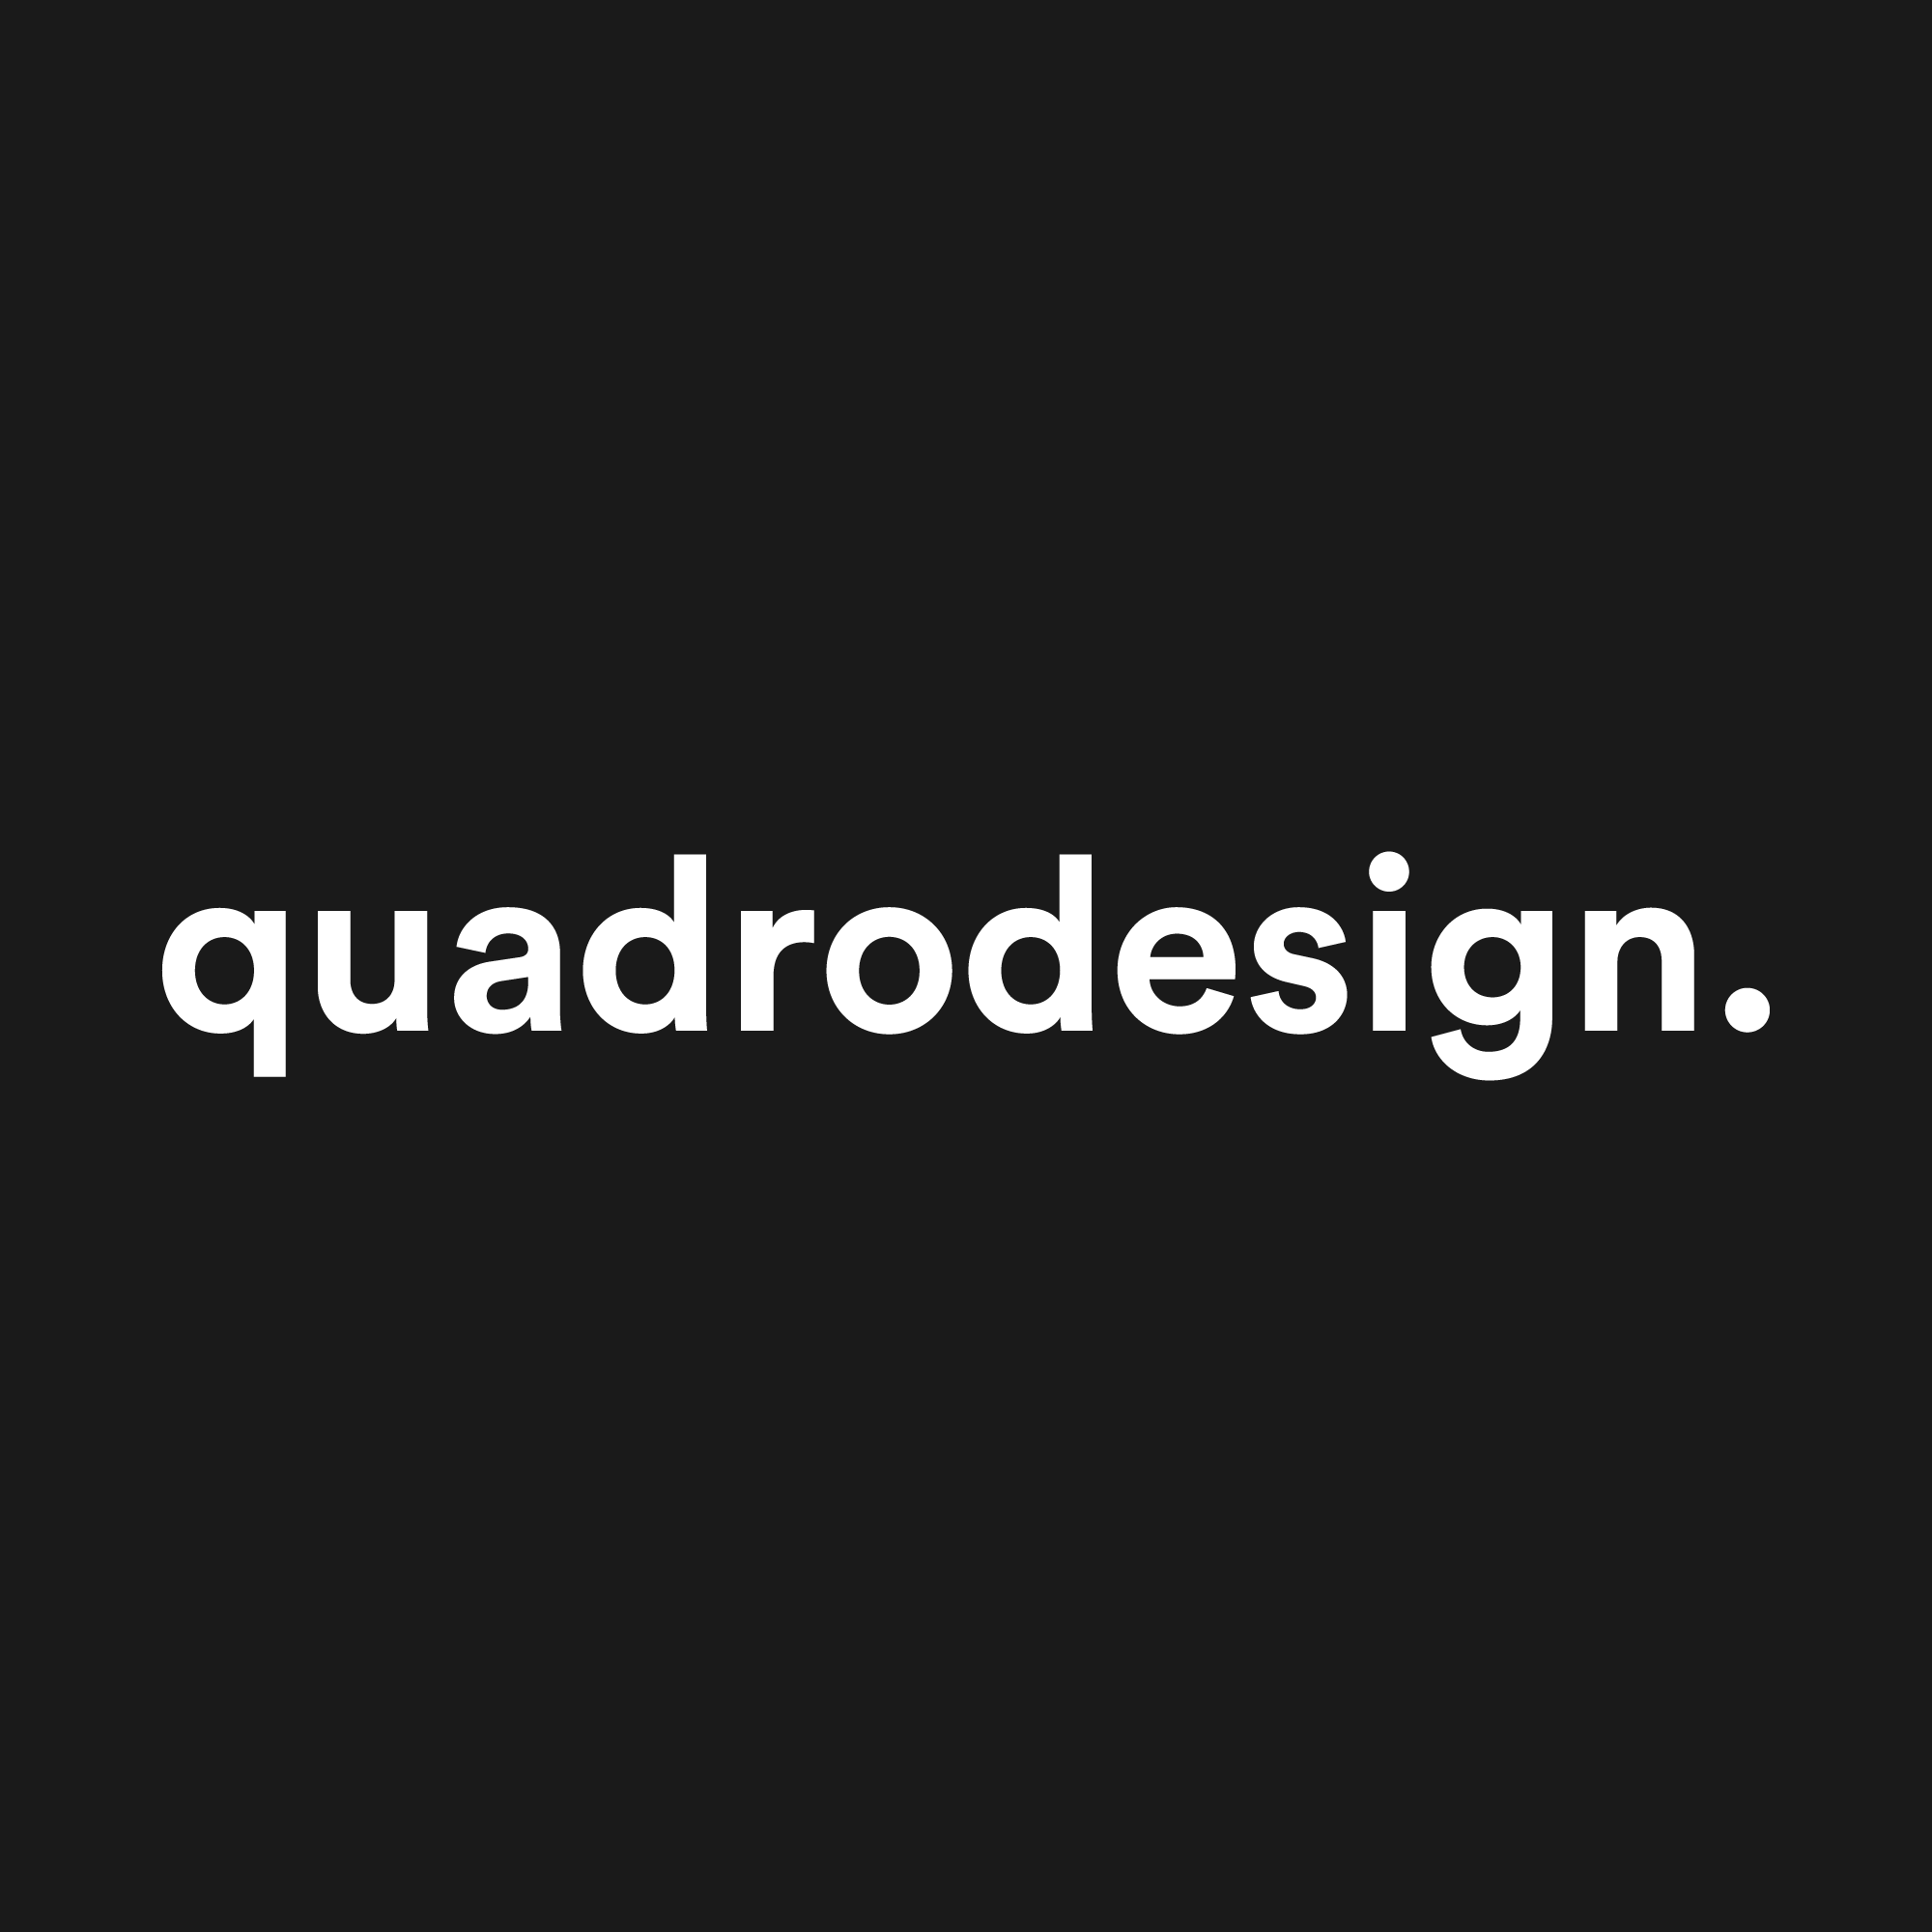 Quadrodesign